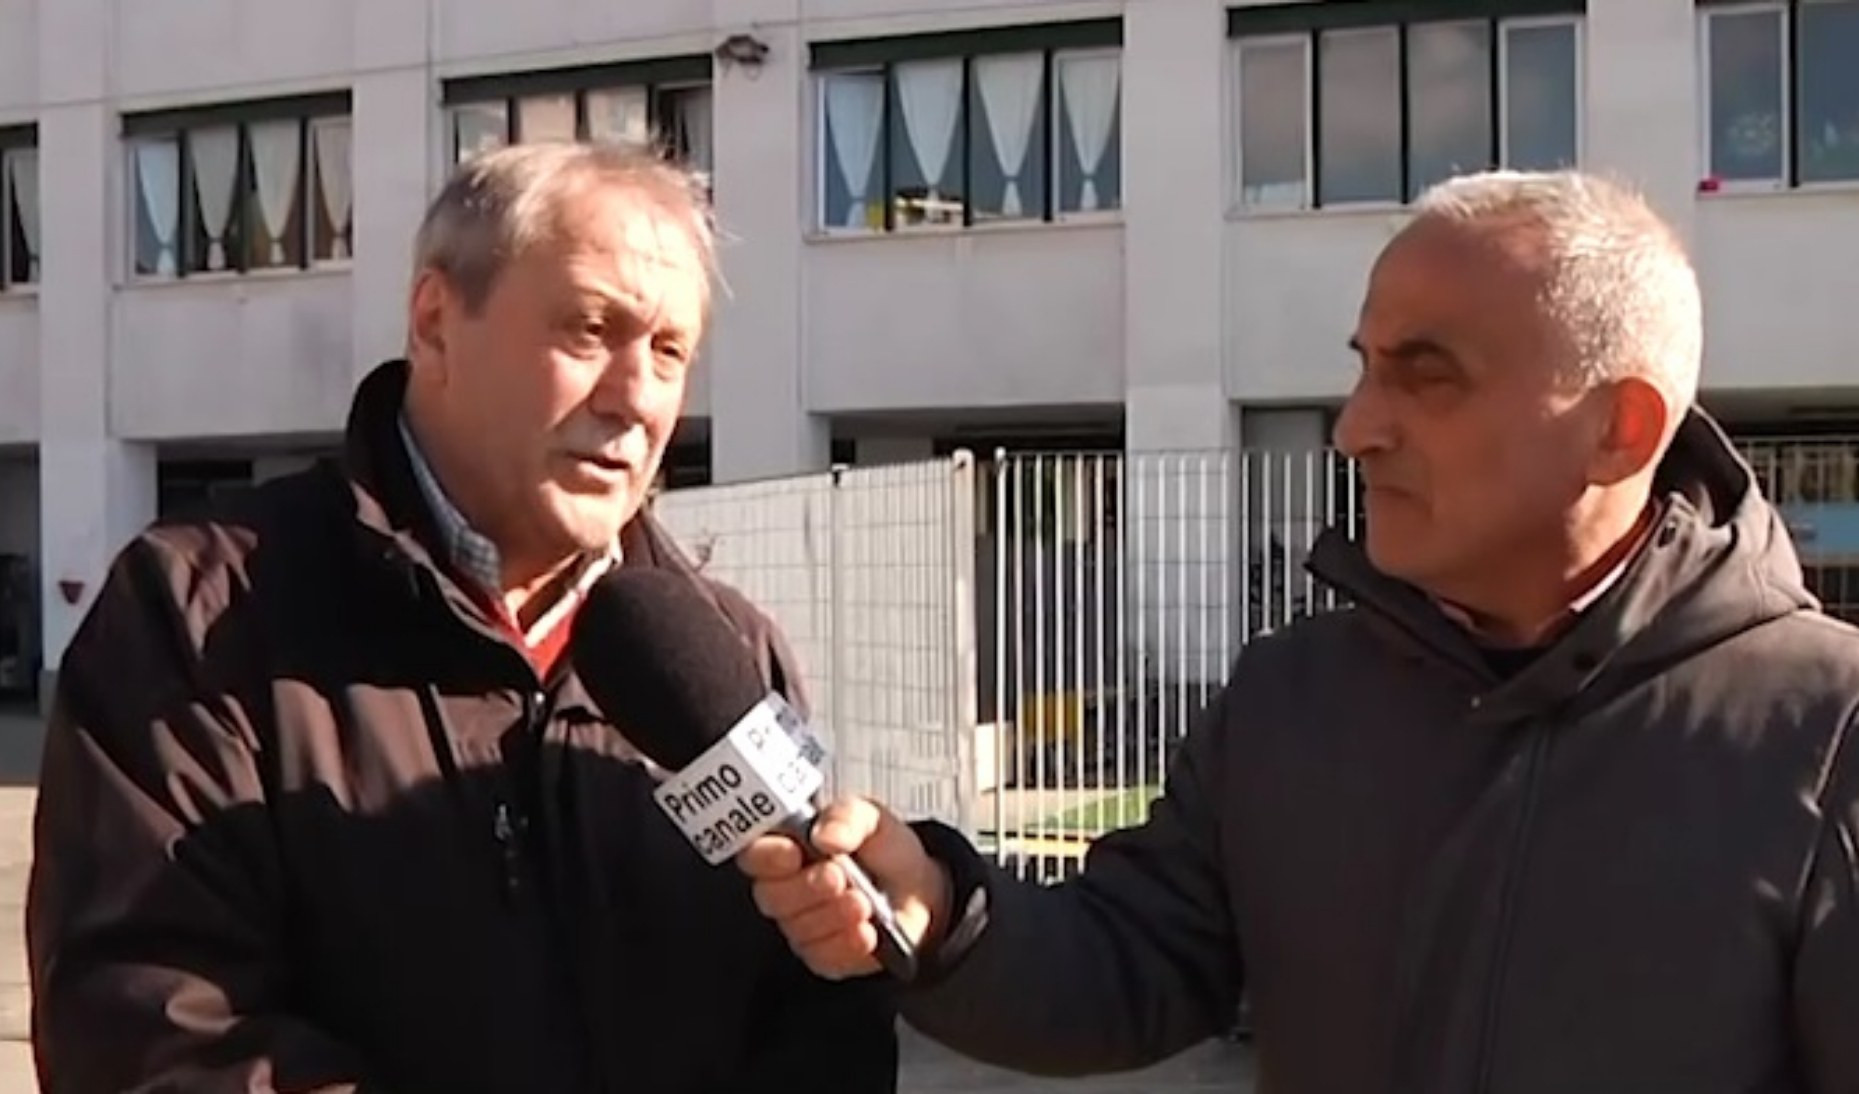 Ex ostello di Oregina, cittadini chiedono spazi per attività di quartiere